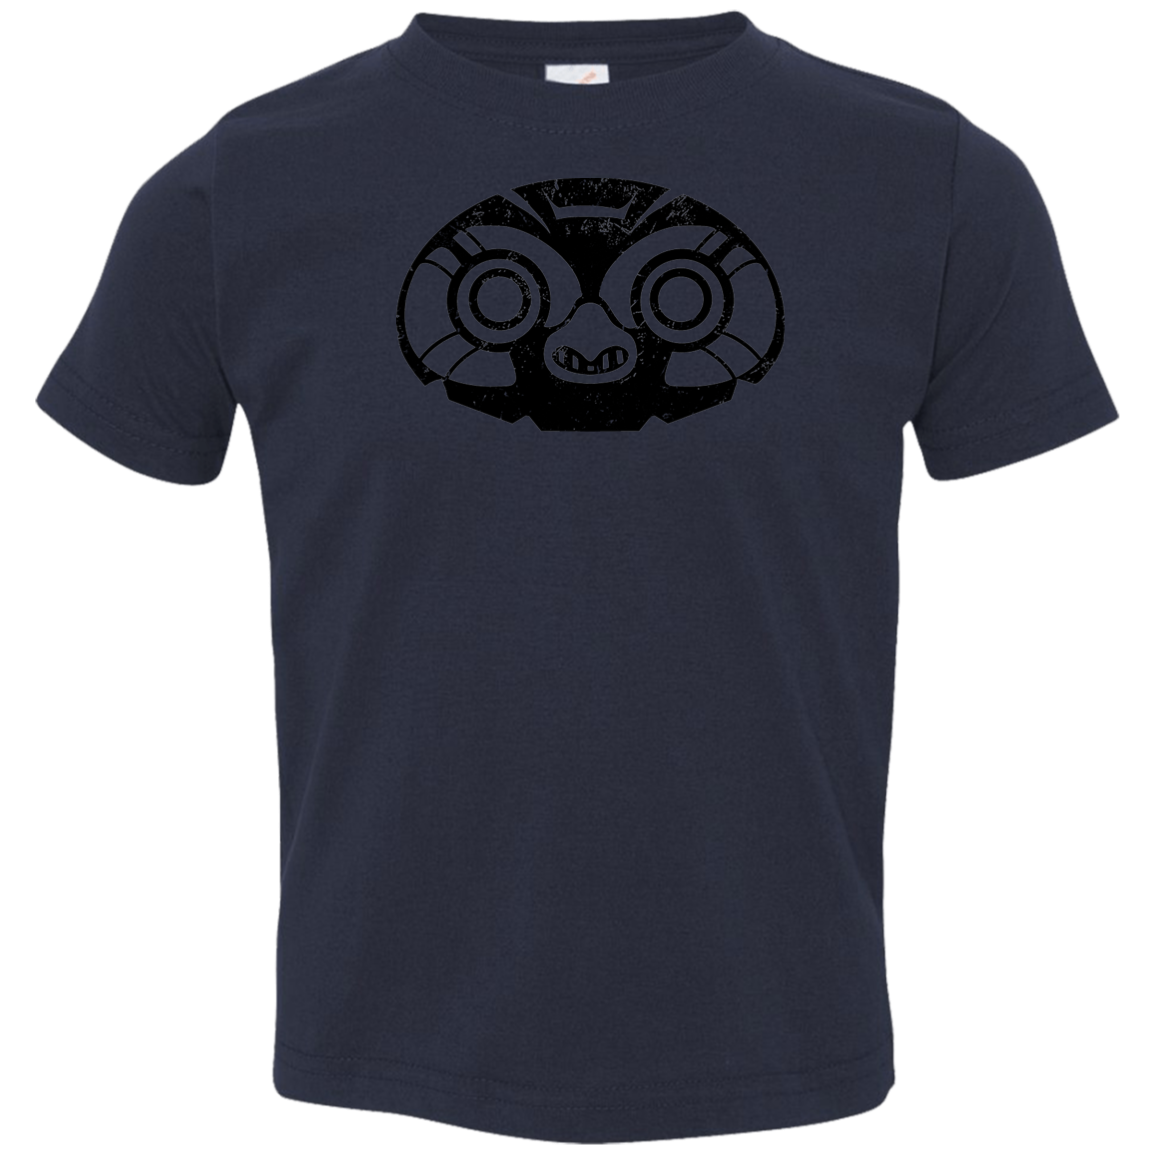 Black Distressed Emblem T-Shirt for Toddlers (Elf Owl/Peeps)